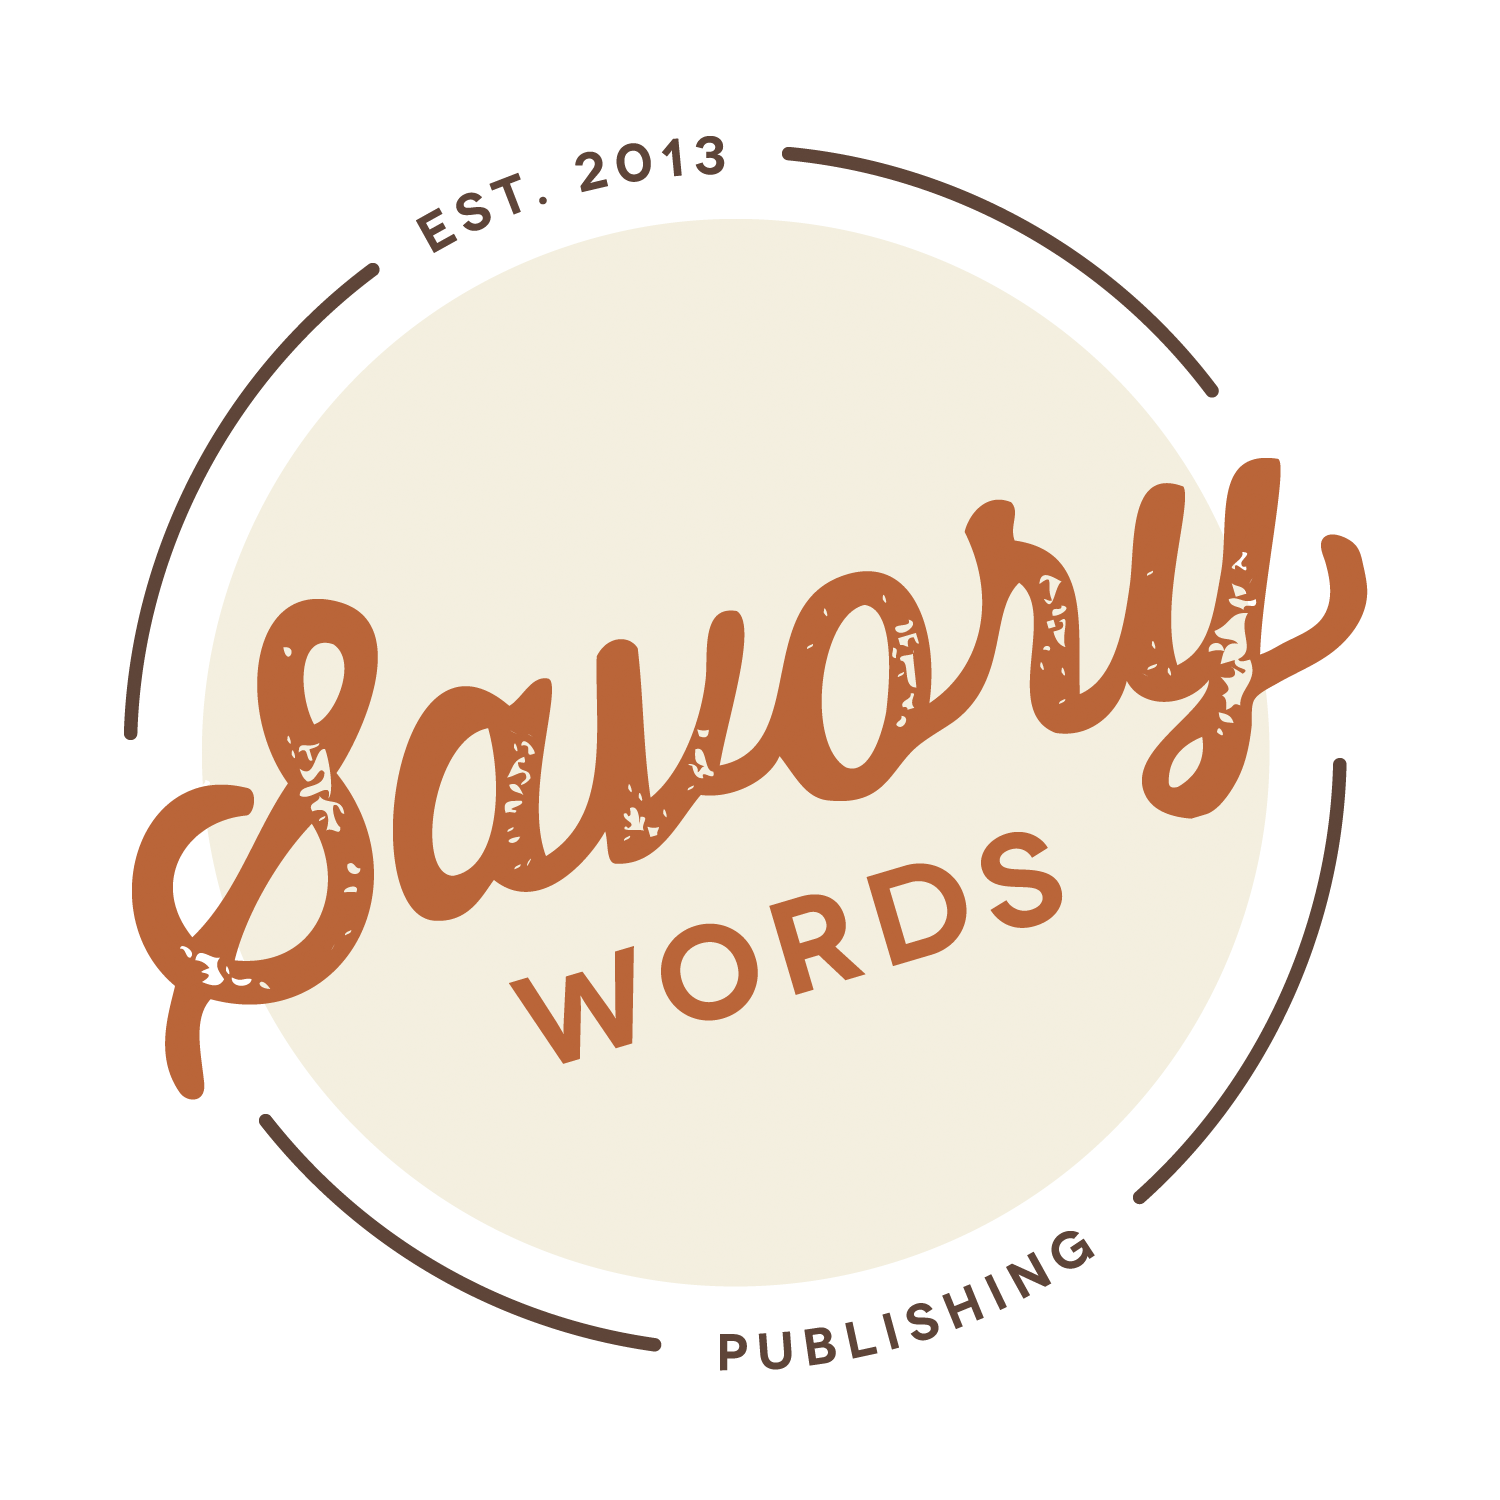 Savory Words Publishing